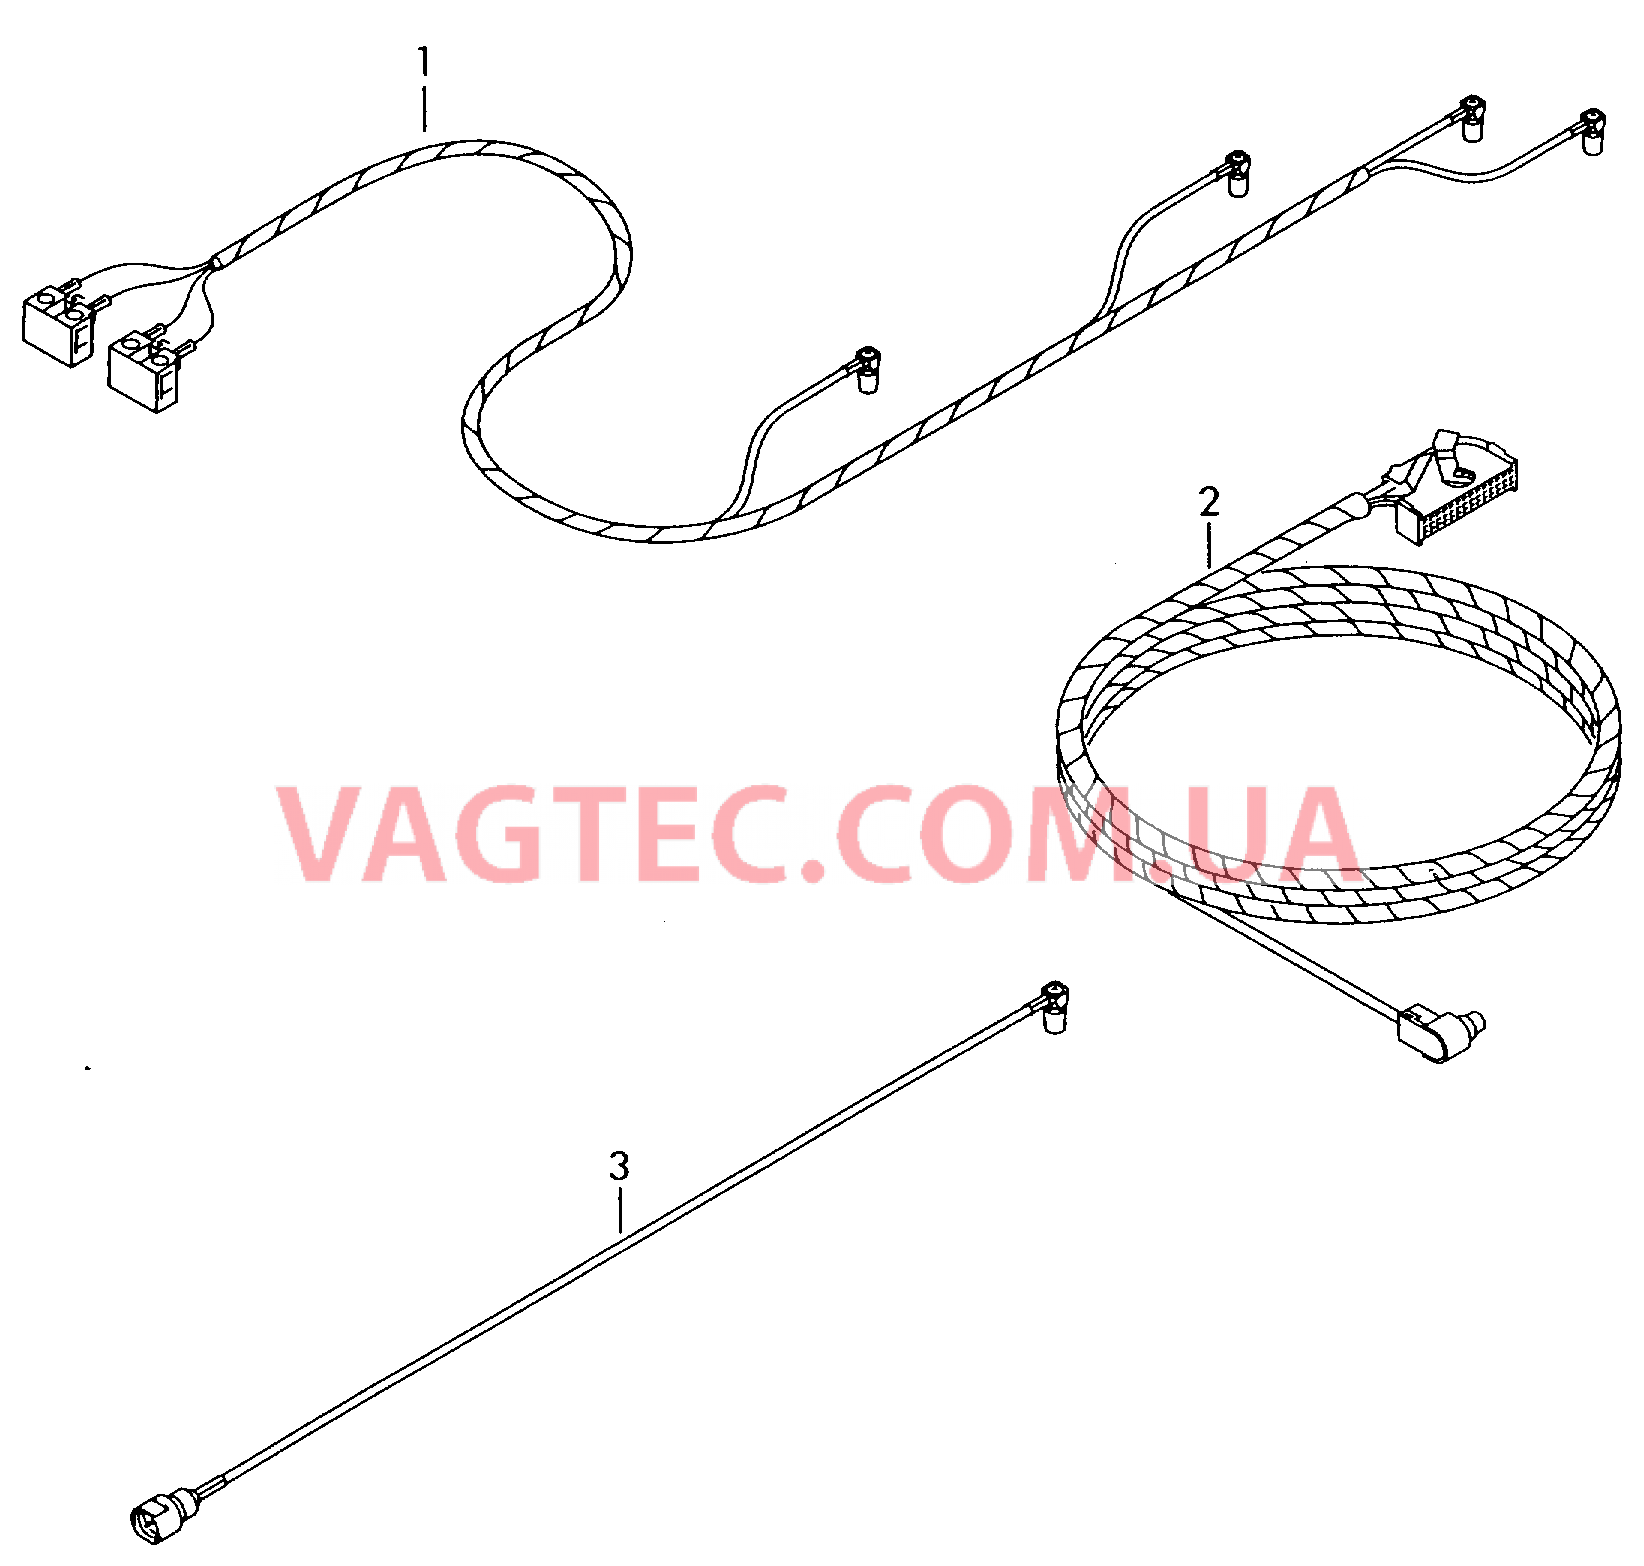 Жгут проводов системы навигации  Антенный кабель Жгут проводов для а/м с комплектом для подключения телефона         также см. иллюстрацию:  для VOLKSWAGEN Passat 2004